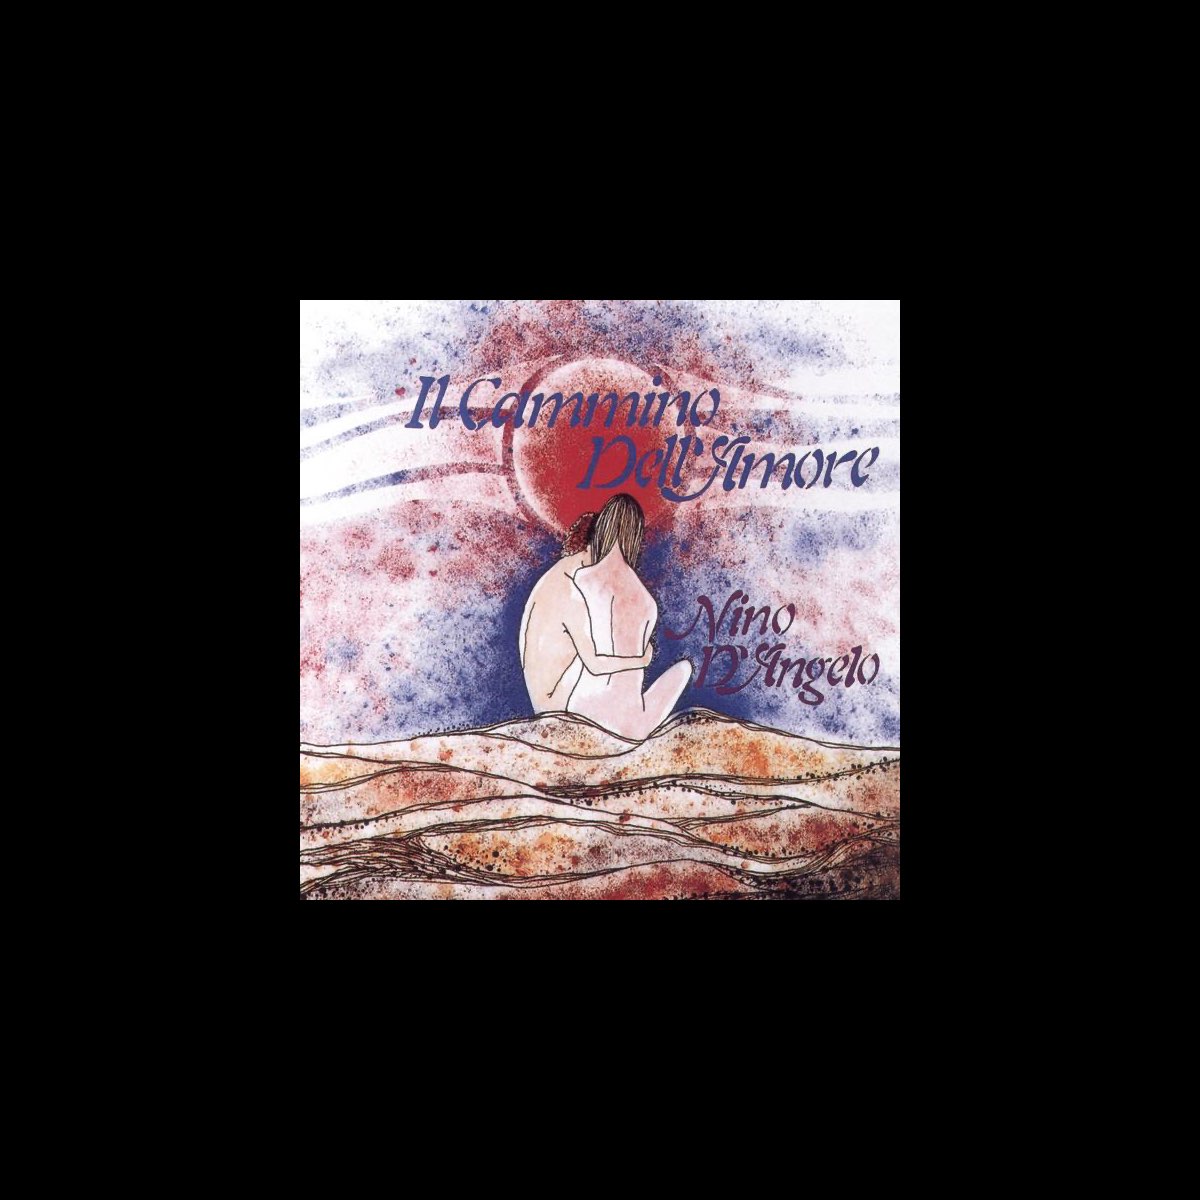 Il cammino dell'amore - Album di Nino D'Angelo - Apple Music